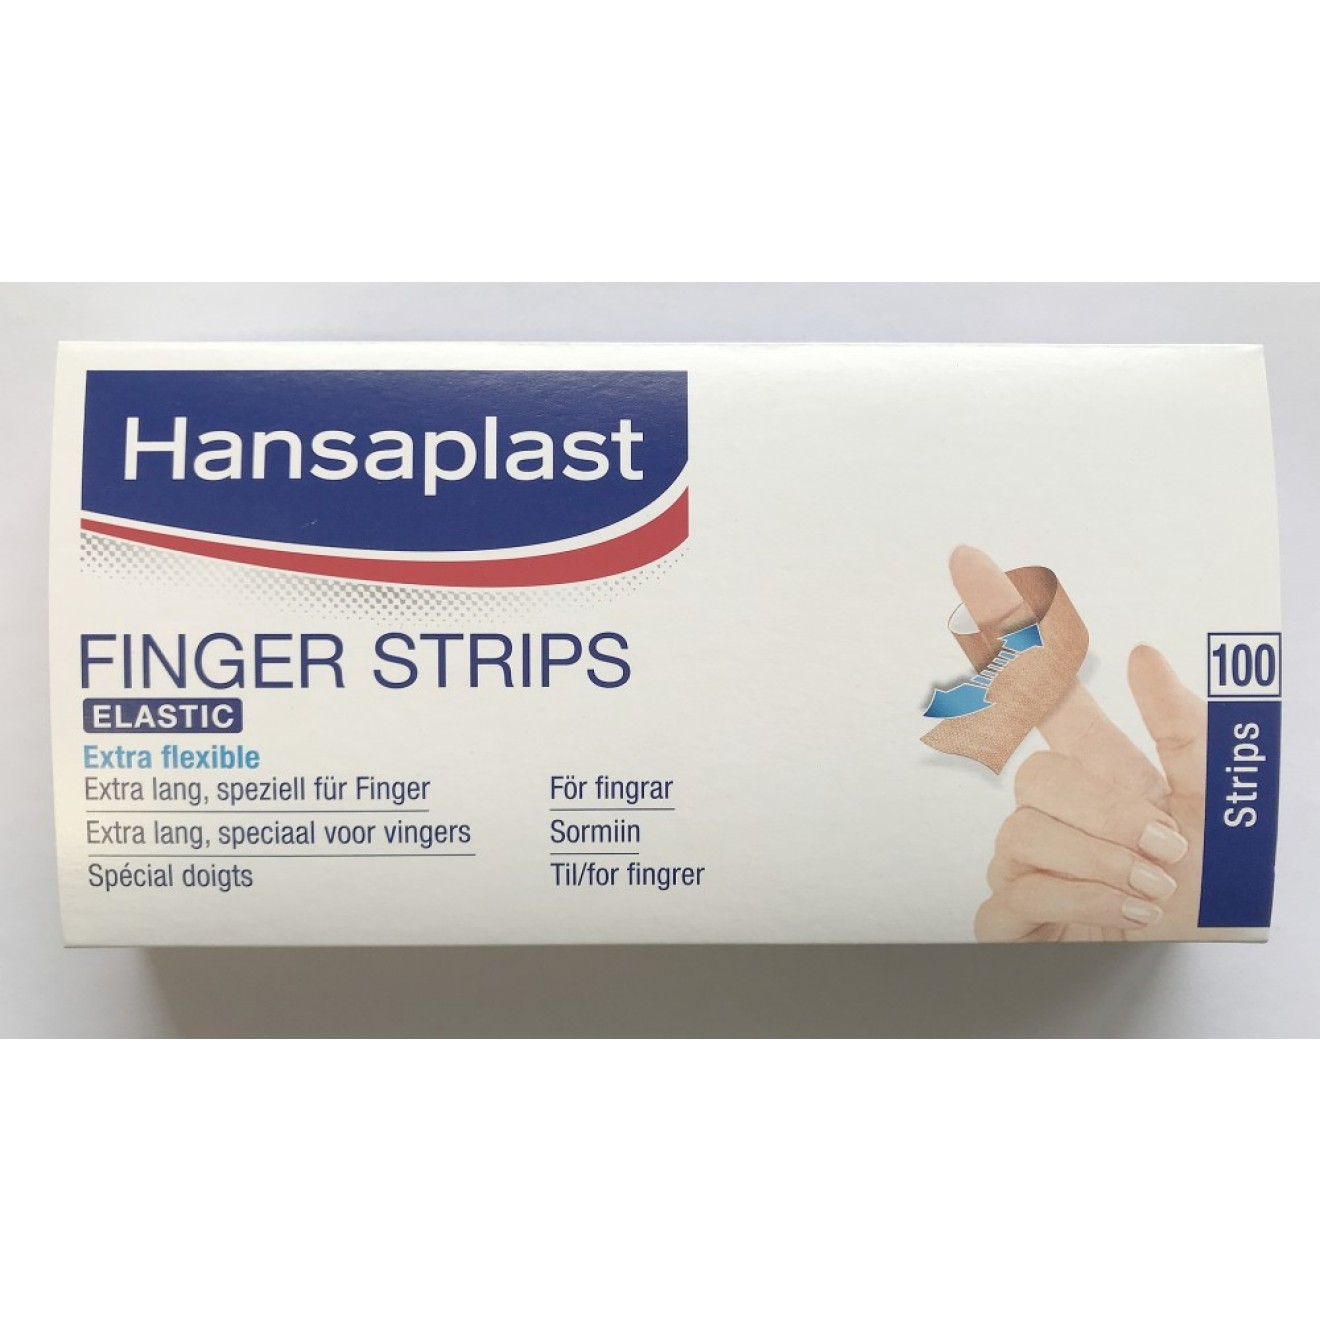 https://www.bestimed.de/images/thumbnail/produkte/large/hansaplast-elastic-finger-strips-100.jpg